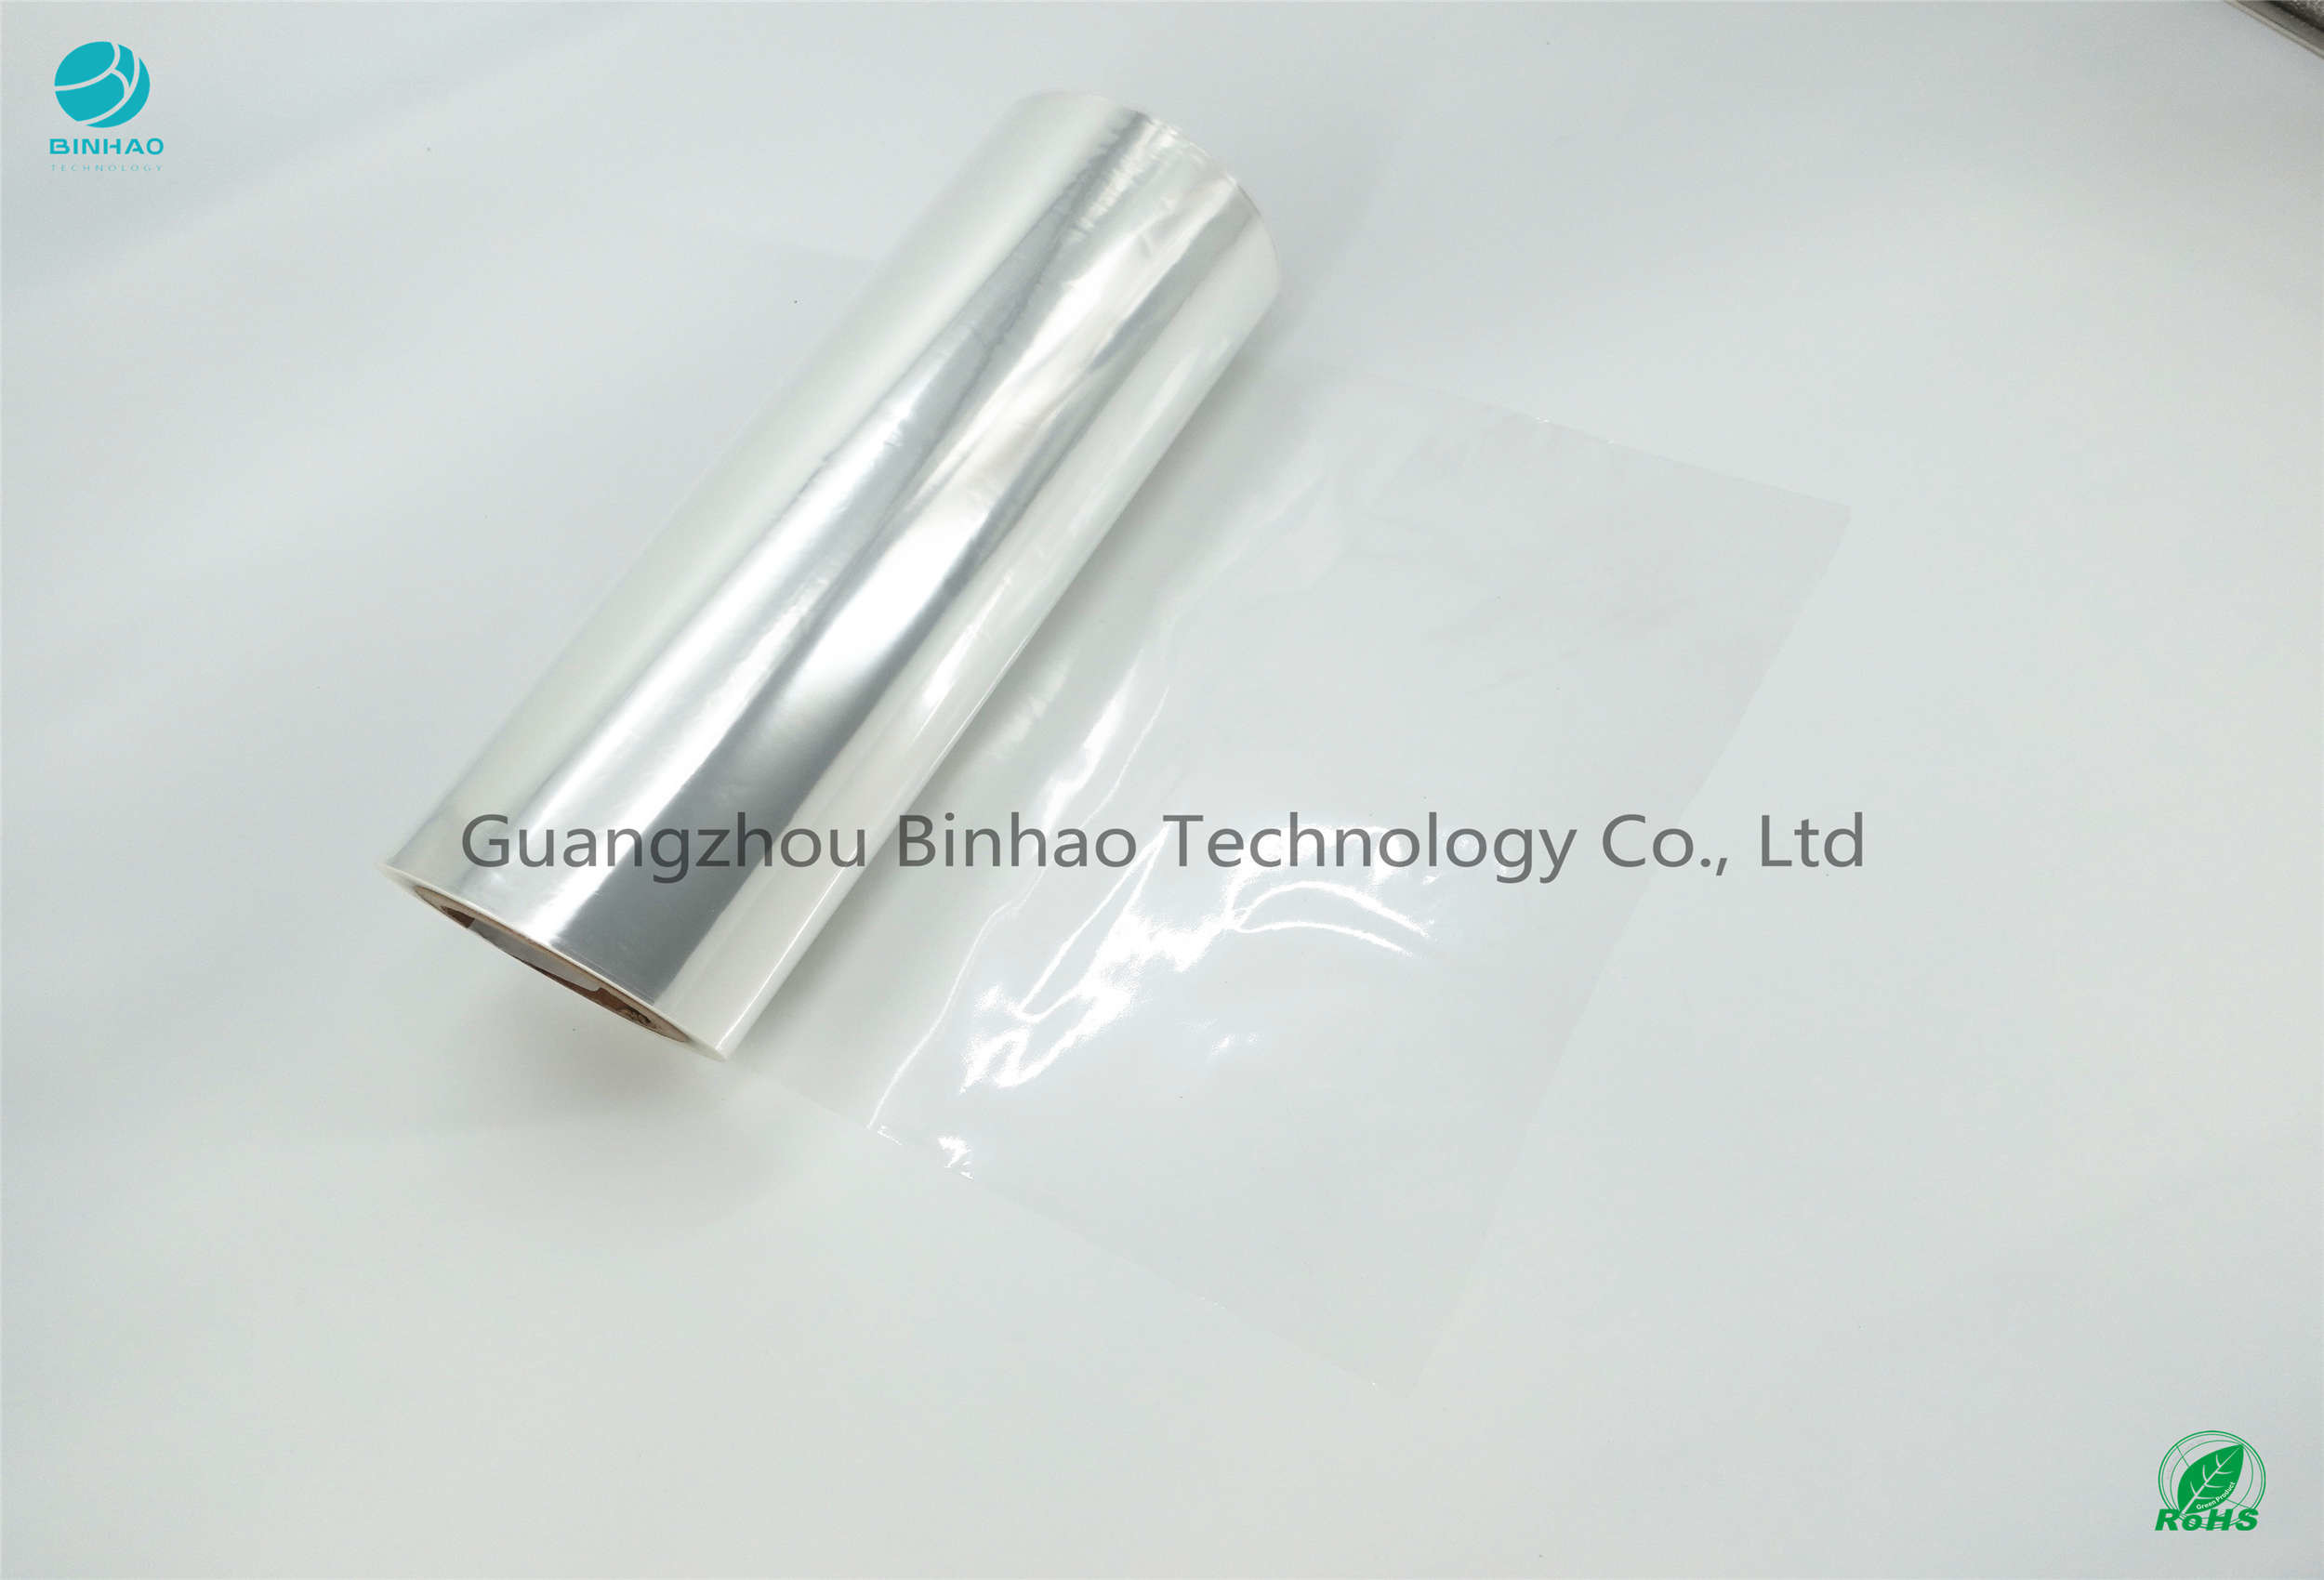 Film d'imballaggio dell'anti tabacco ad alta resistenza statico del PVC 1,40 G/Cm3